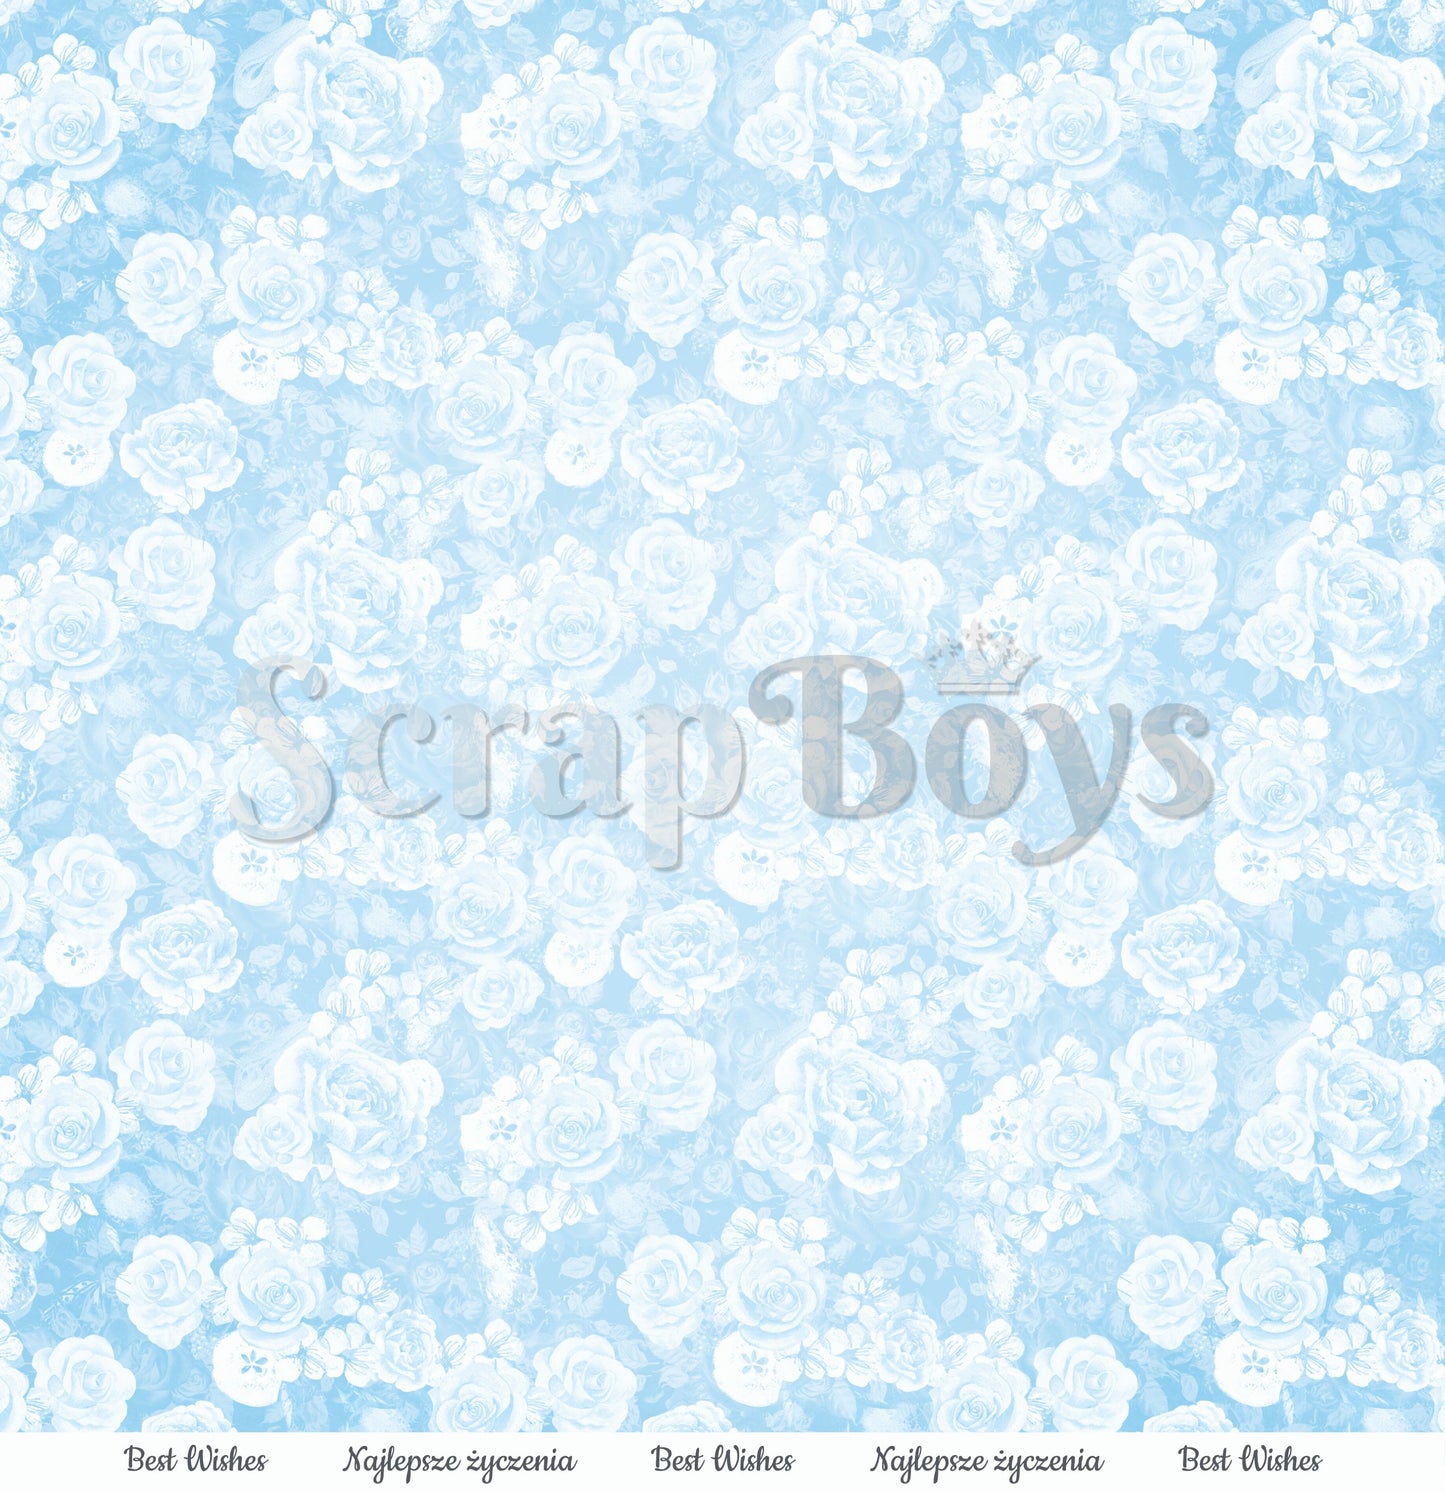 ScrapBoys - Butterfly Meadow - 12 x 12 Pattern Paper (Bume-01)